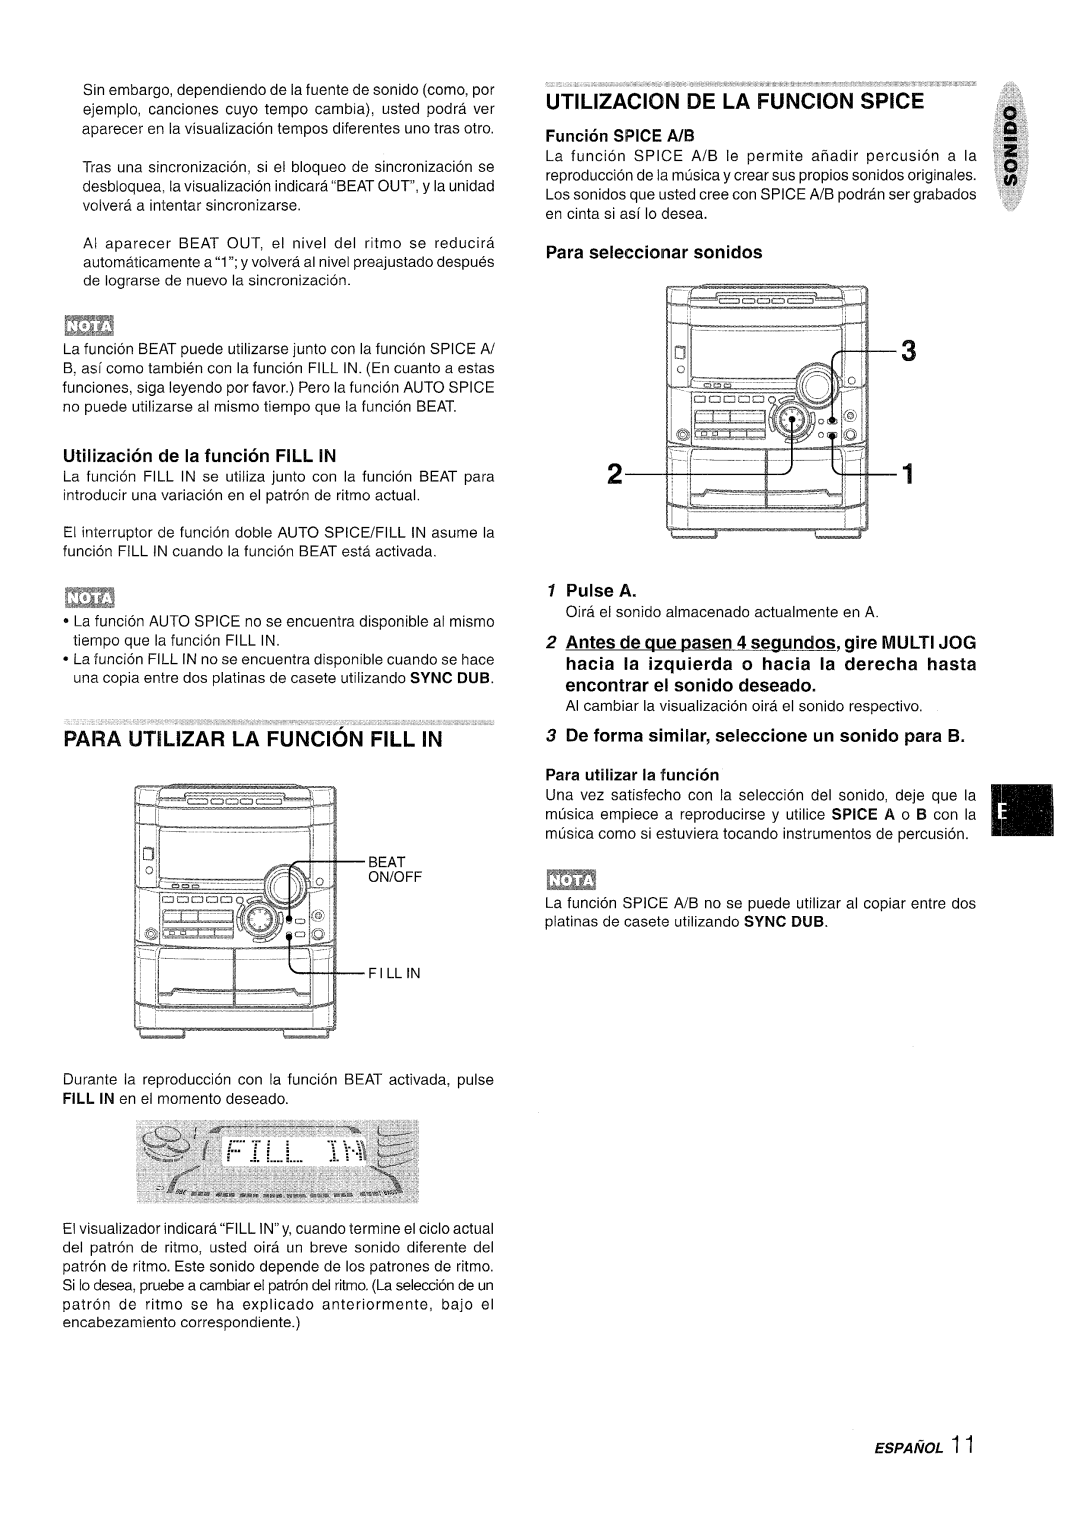 Sony NSX-A767 manual Para seleccionar sonidos, Utilization de la funcion FILL IN, Y Pulse A 